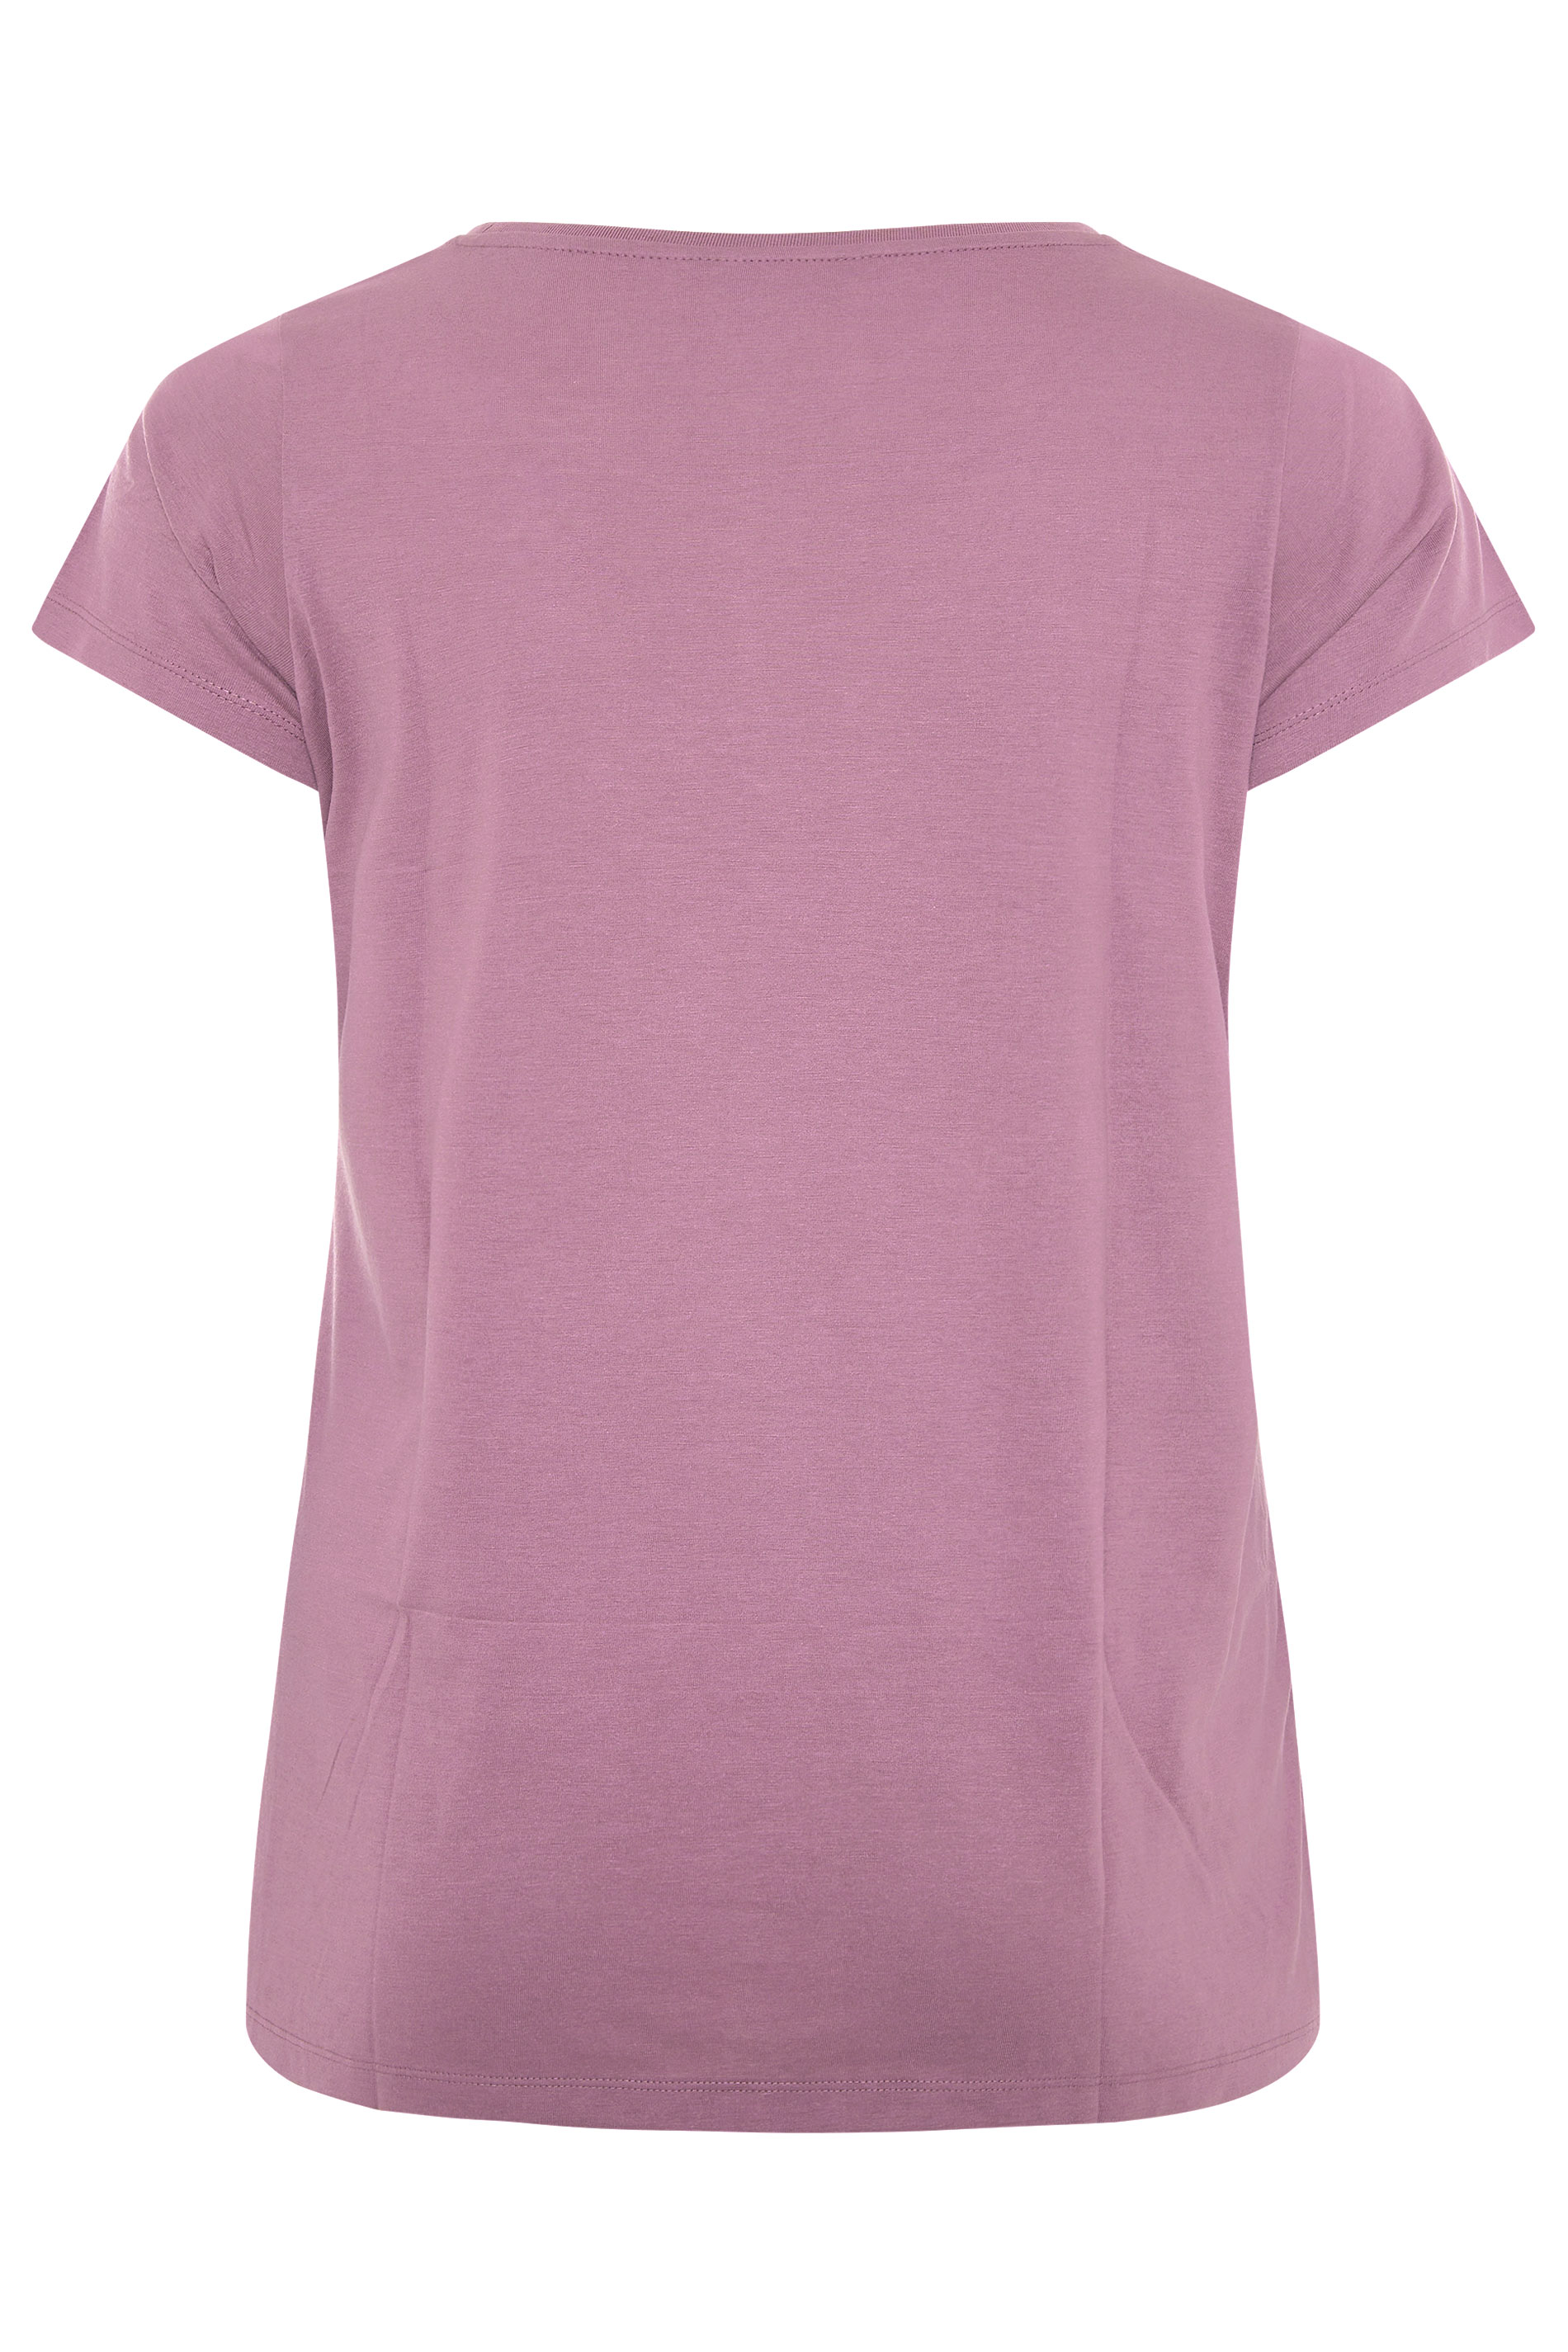 Plus Size Mauve Short Sleeve T-Shirt | Yours Clothing